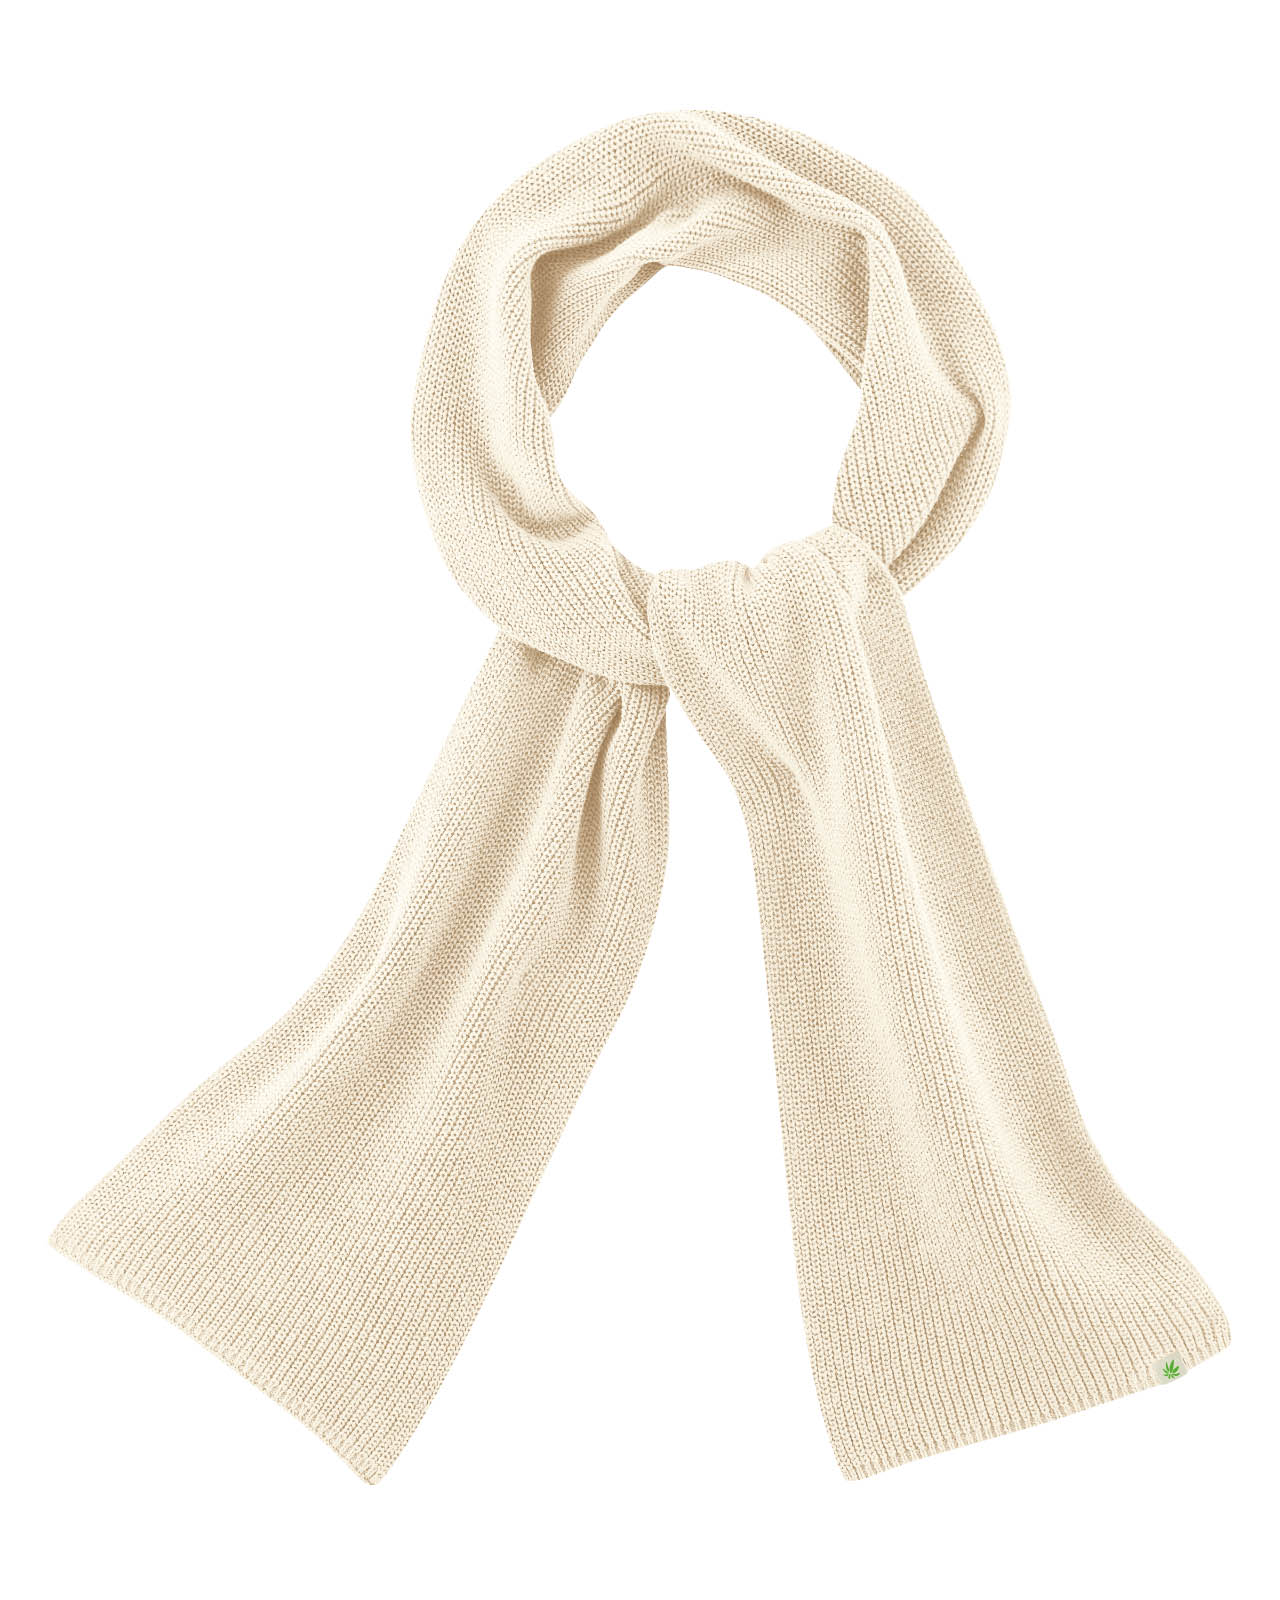 LZ414 scarf, knit